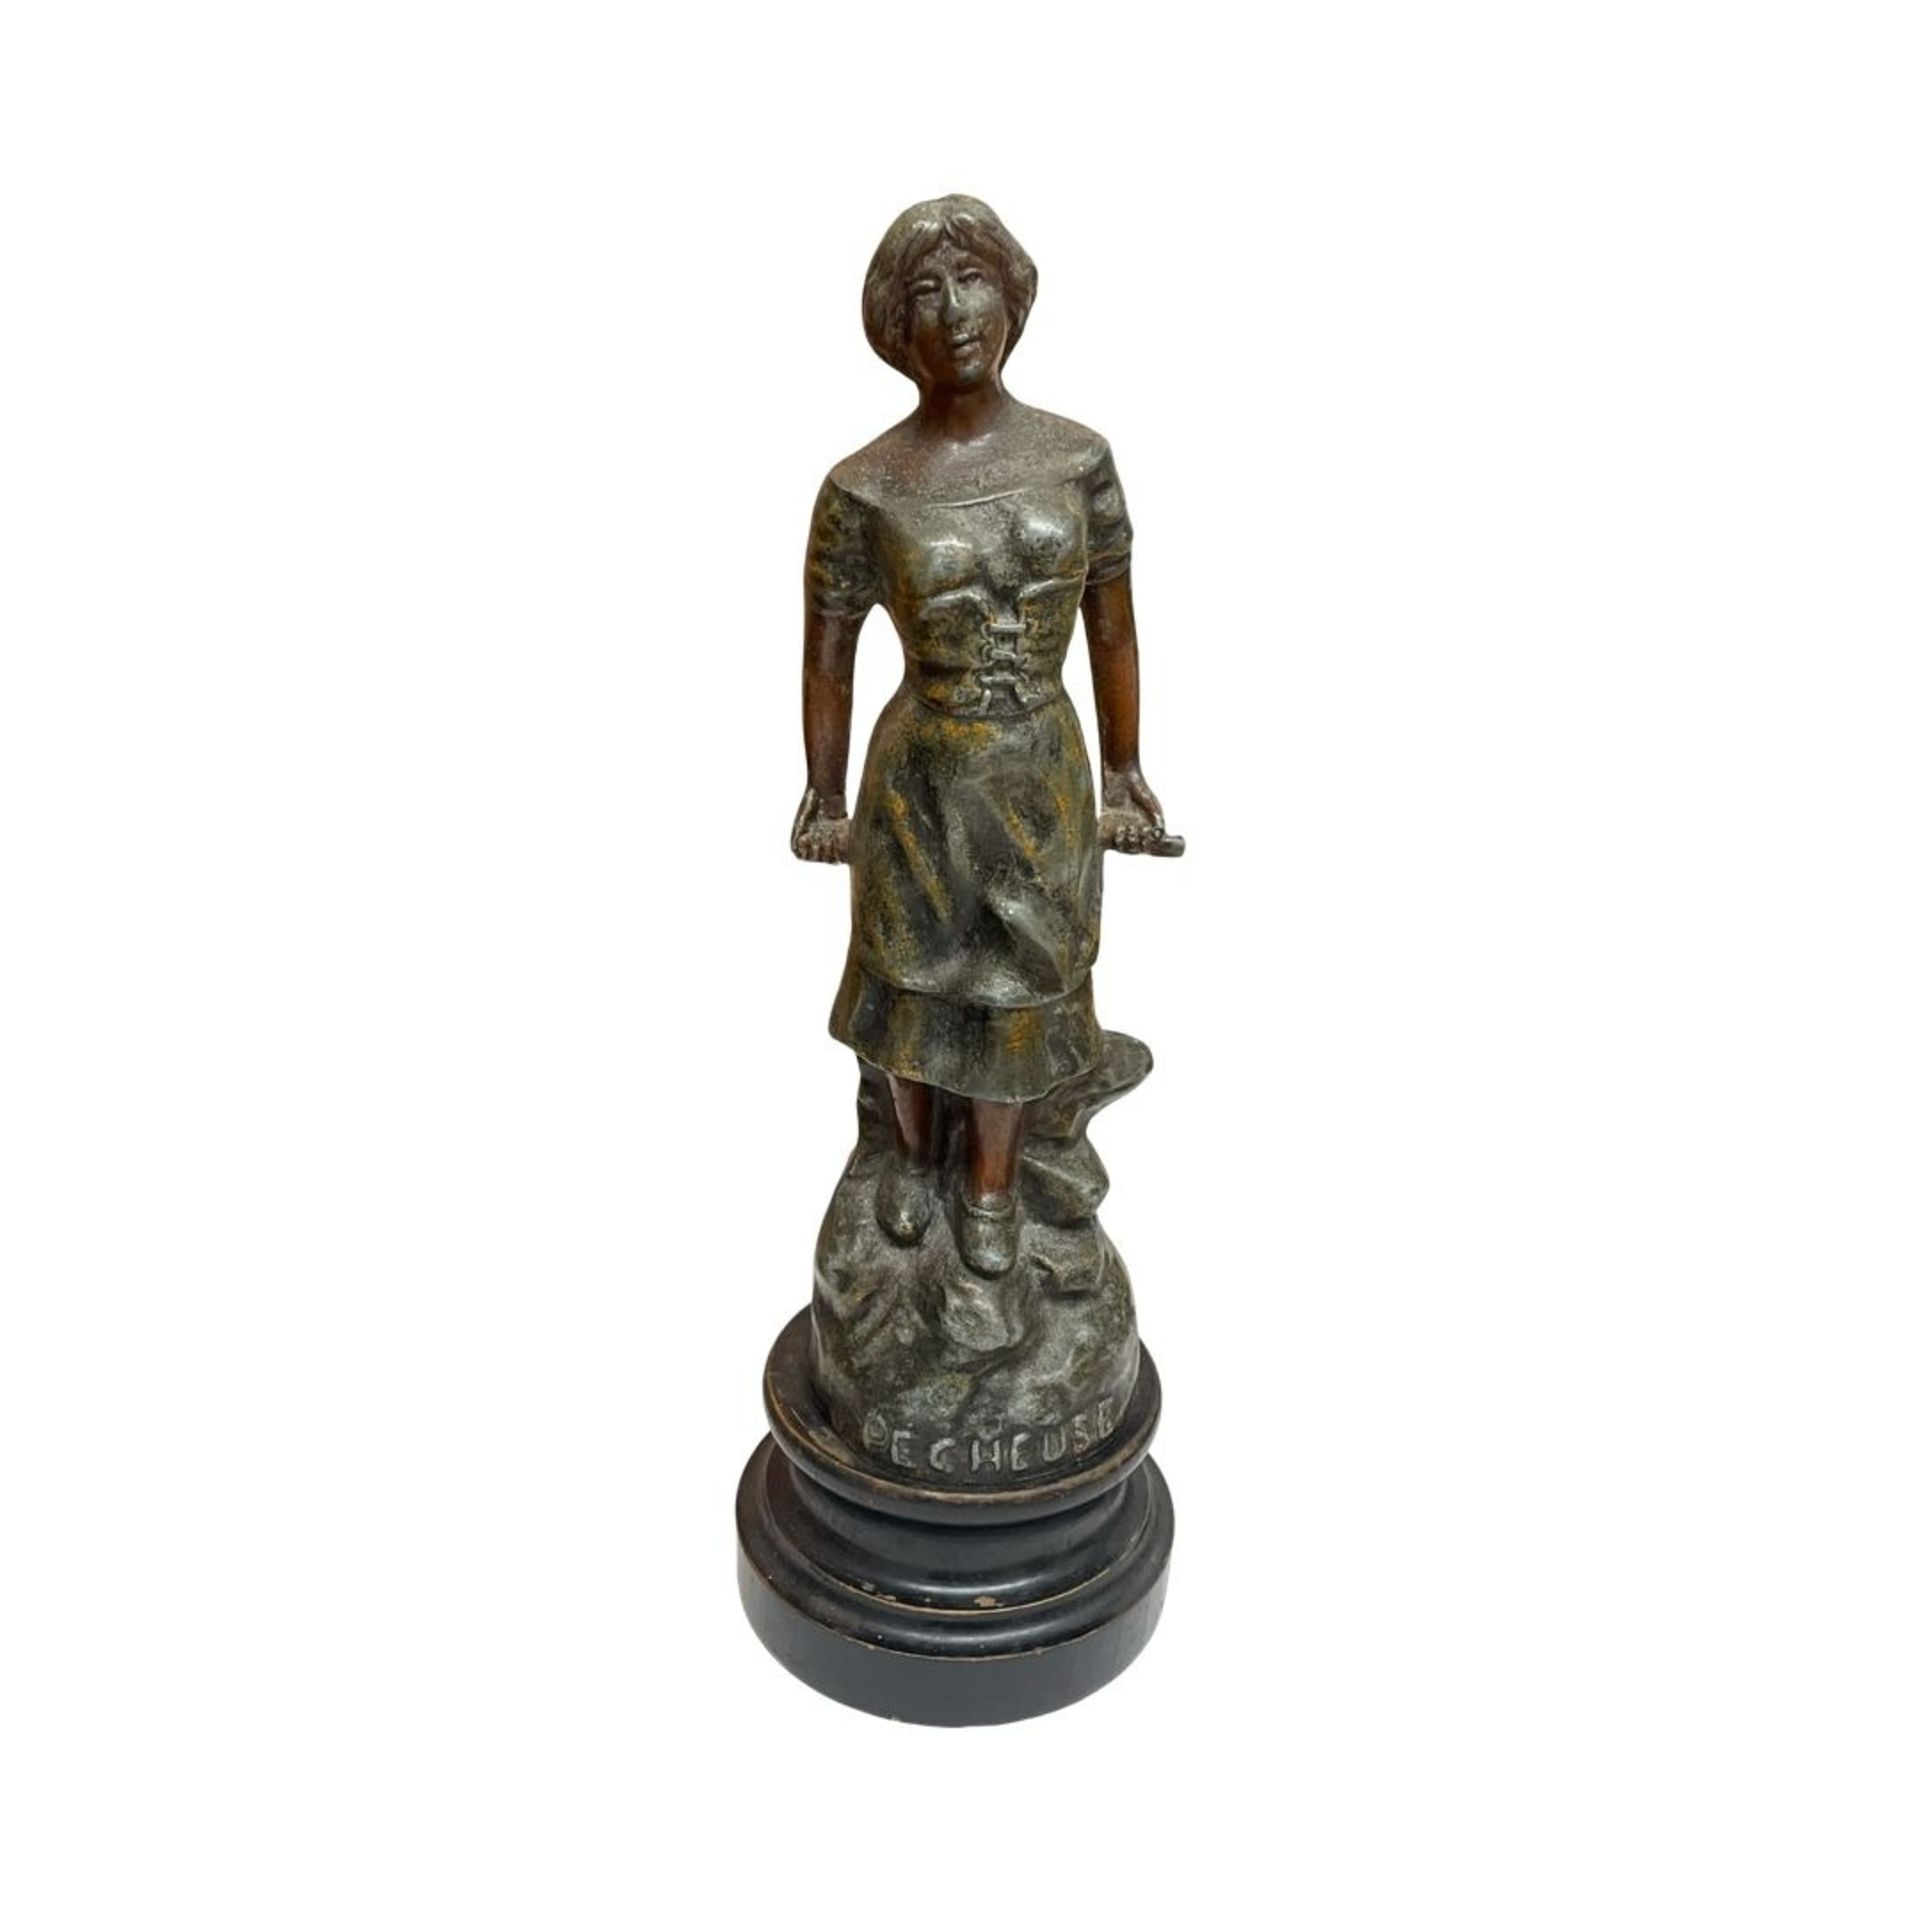 French bronzed spelter statute